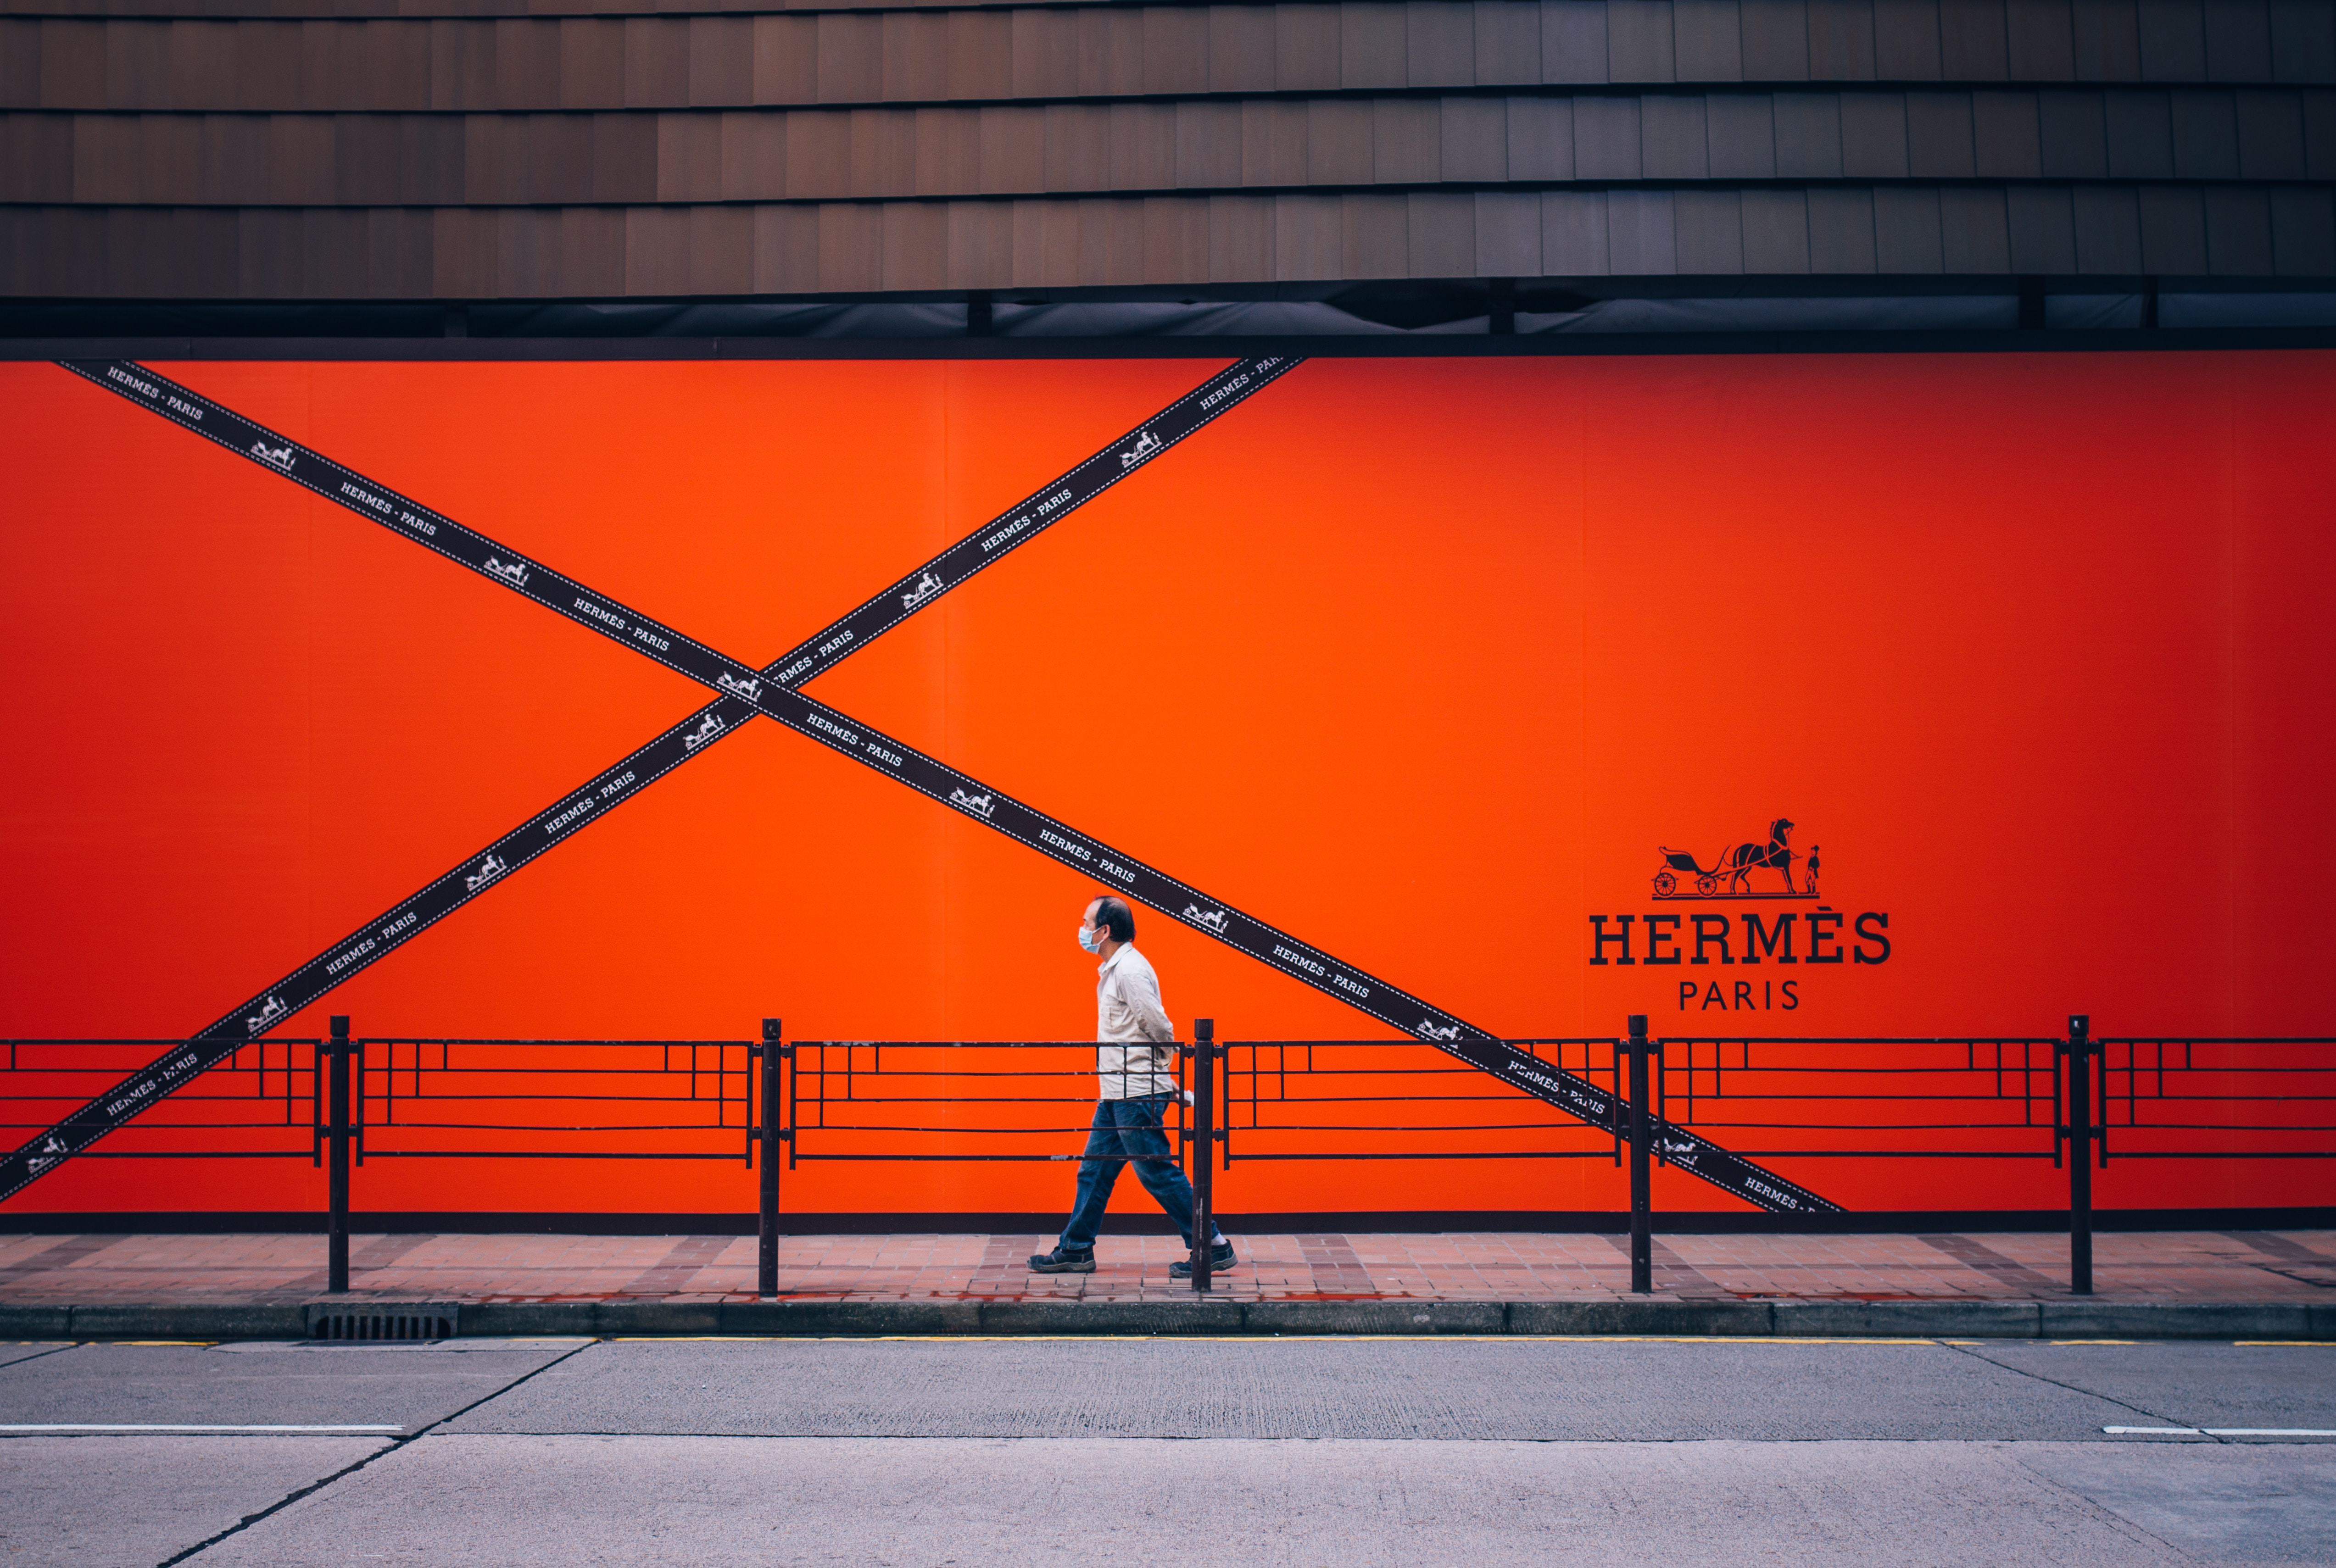 How to Know When Hermès Restocks